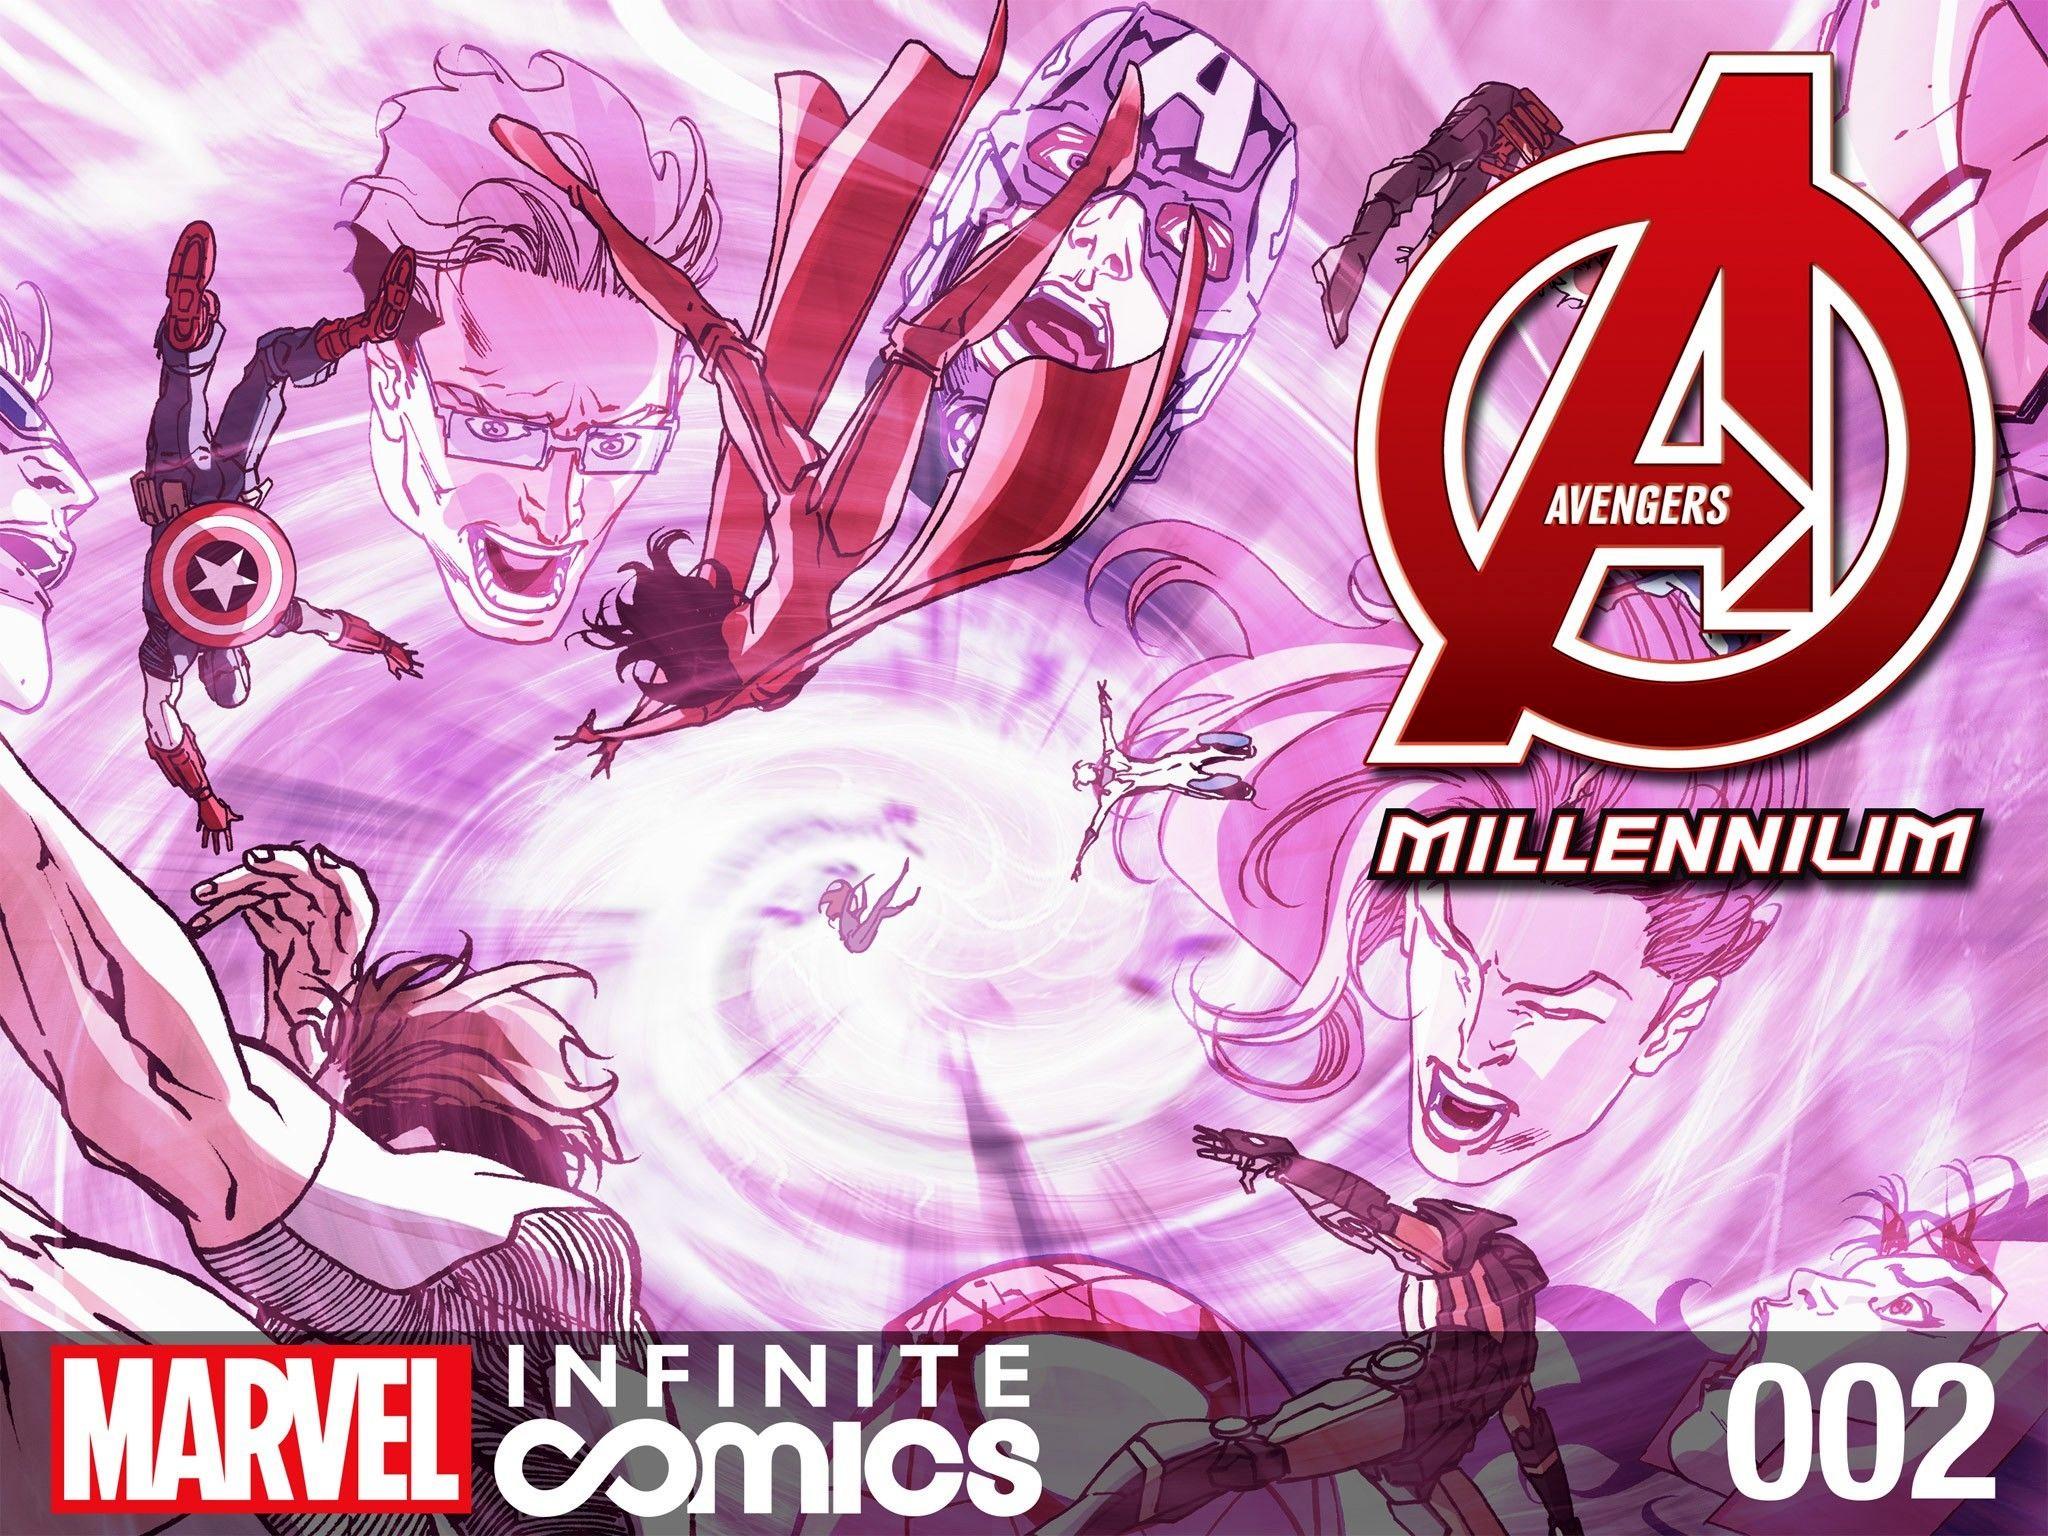 Avengers: Millennium Infinite Comic Vol. 1 #2